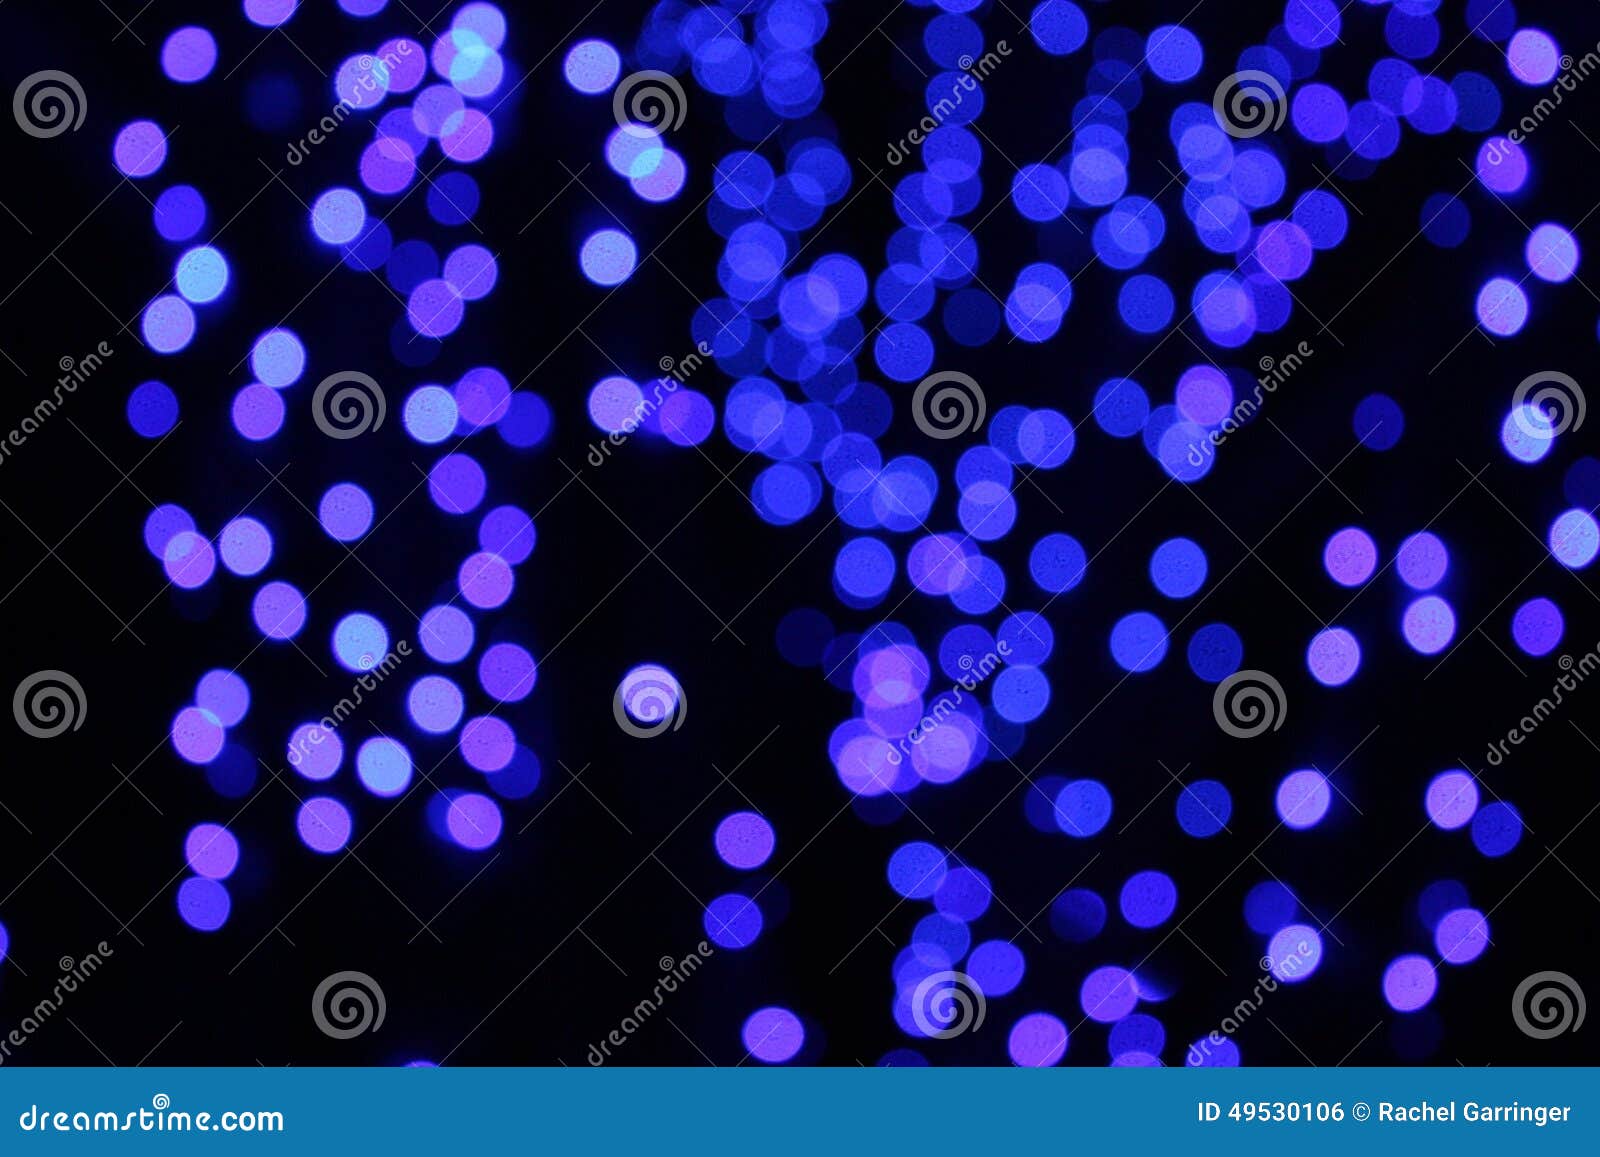 Blue Lights Stock Photo Image Of Botanical Christmas 49530106